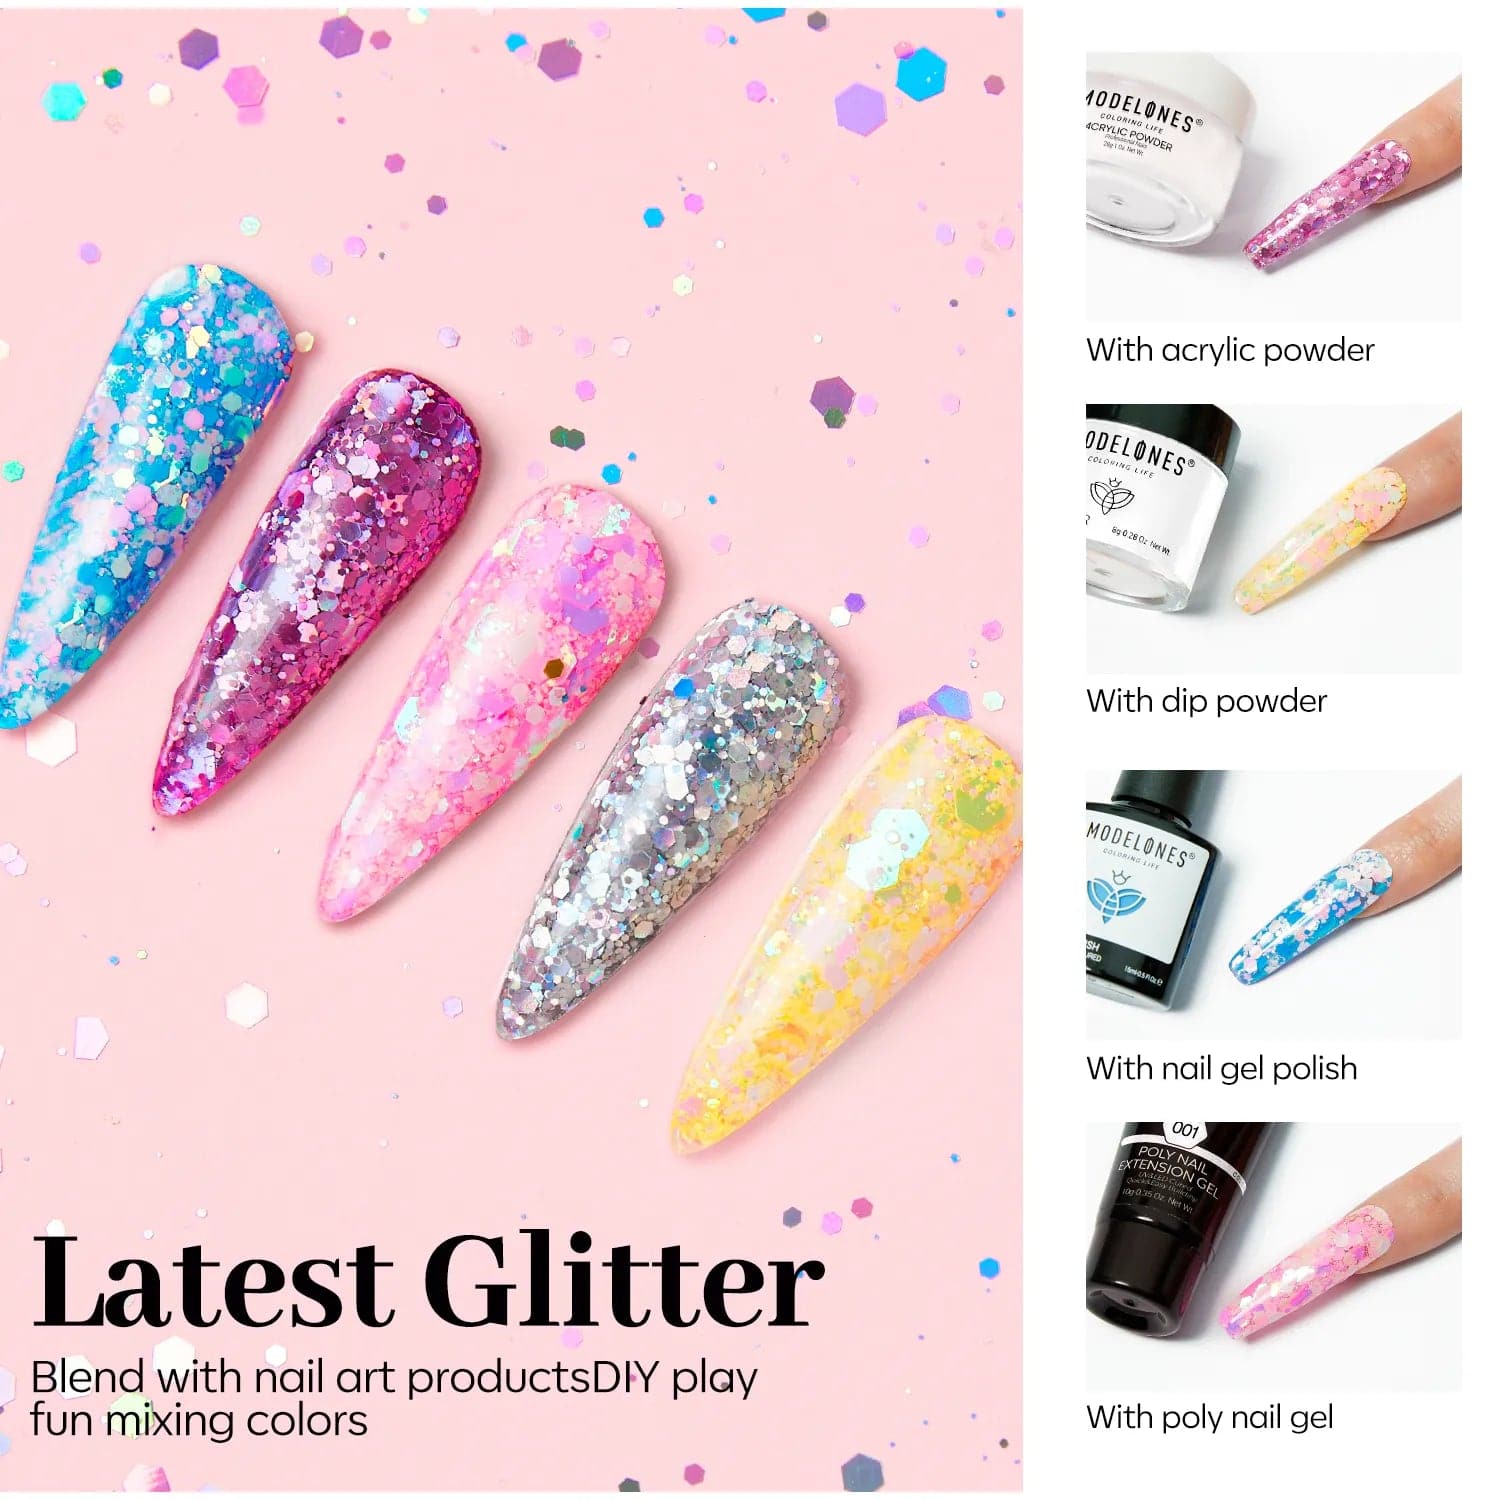 First Love - Nail Art Glitter - MODELONES.com